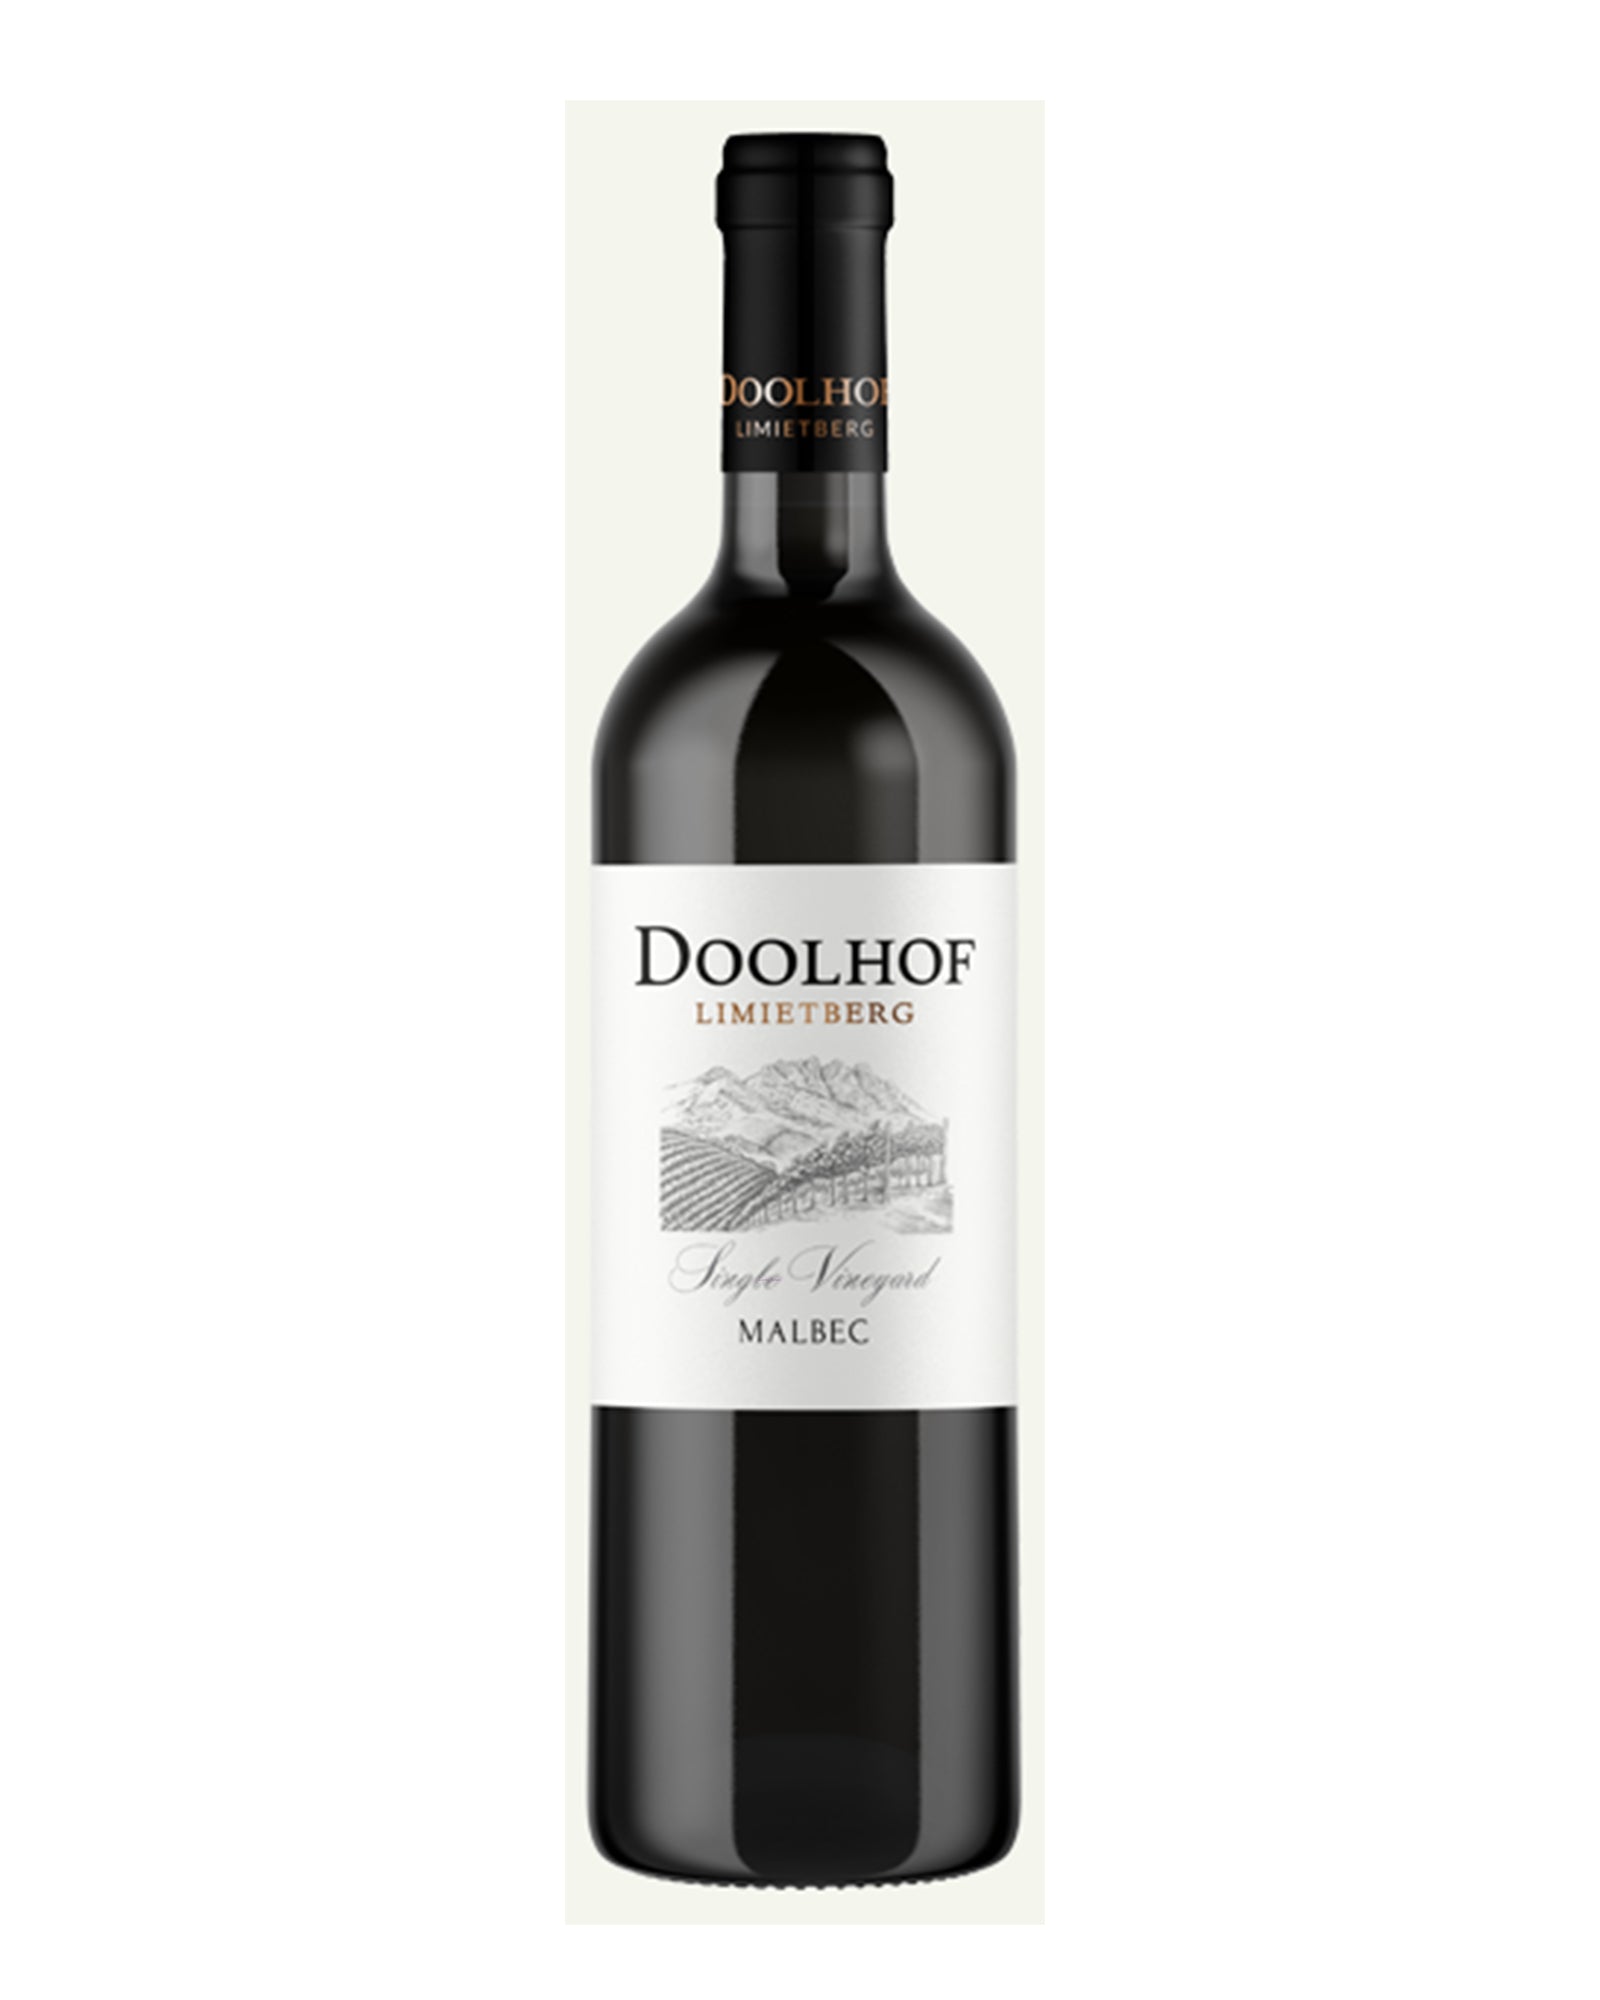 Doolhof Limietberg single vineyard Malbec 2020